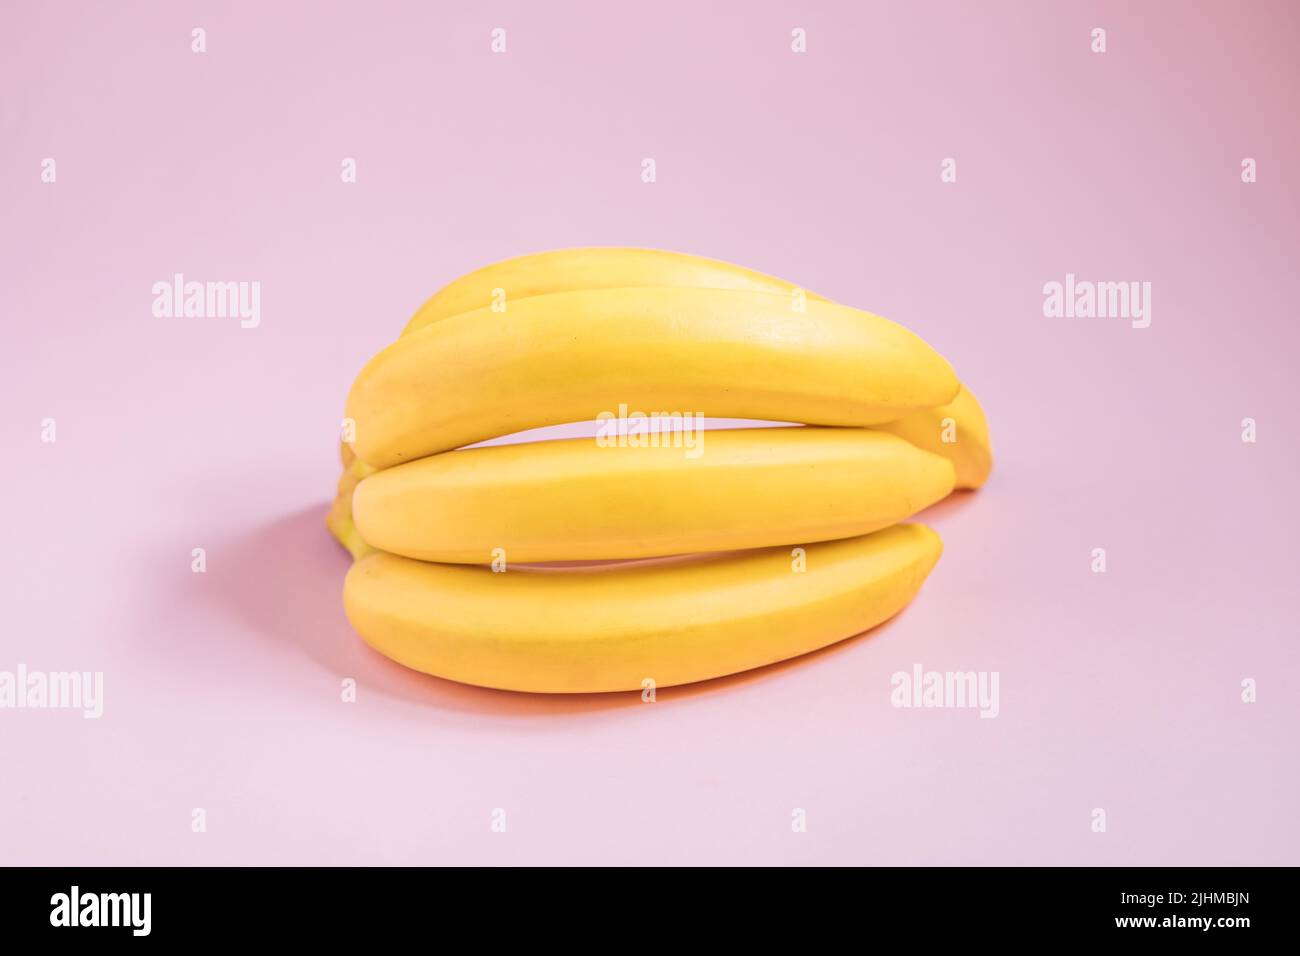 Banana e yogurt in vetro su bordo azzurro con banana sullo sfondo. Colazione sana. Dolce. Stile di vita fitness. Dessert vegetariano sano. Foto Stock